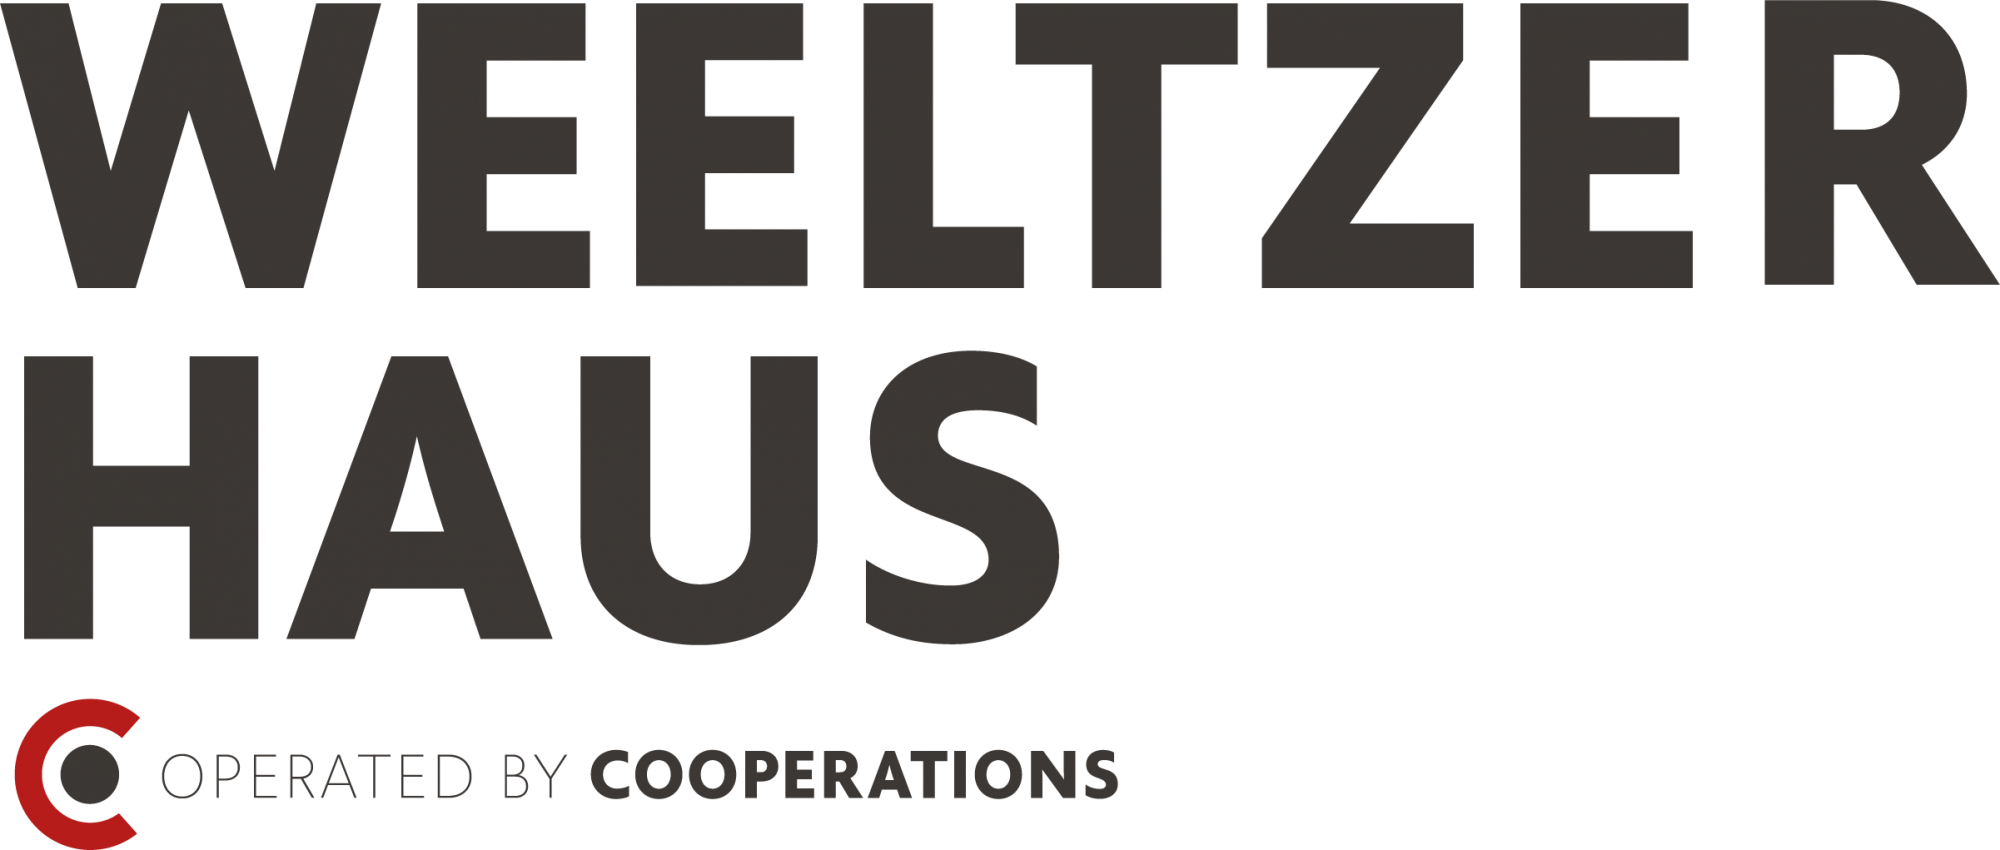 Logo vom Weeltzer Haus